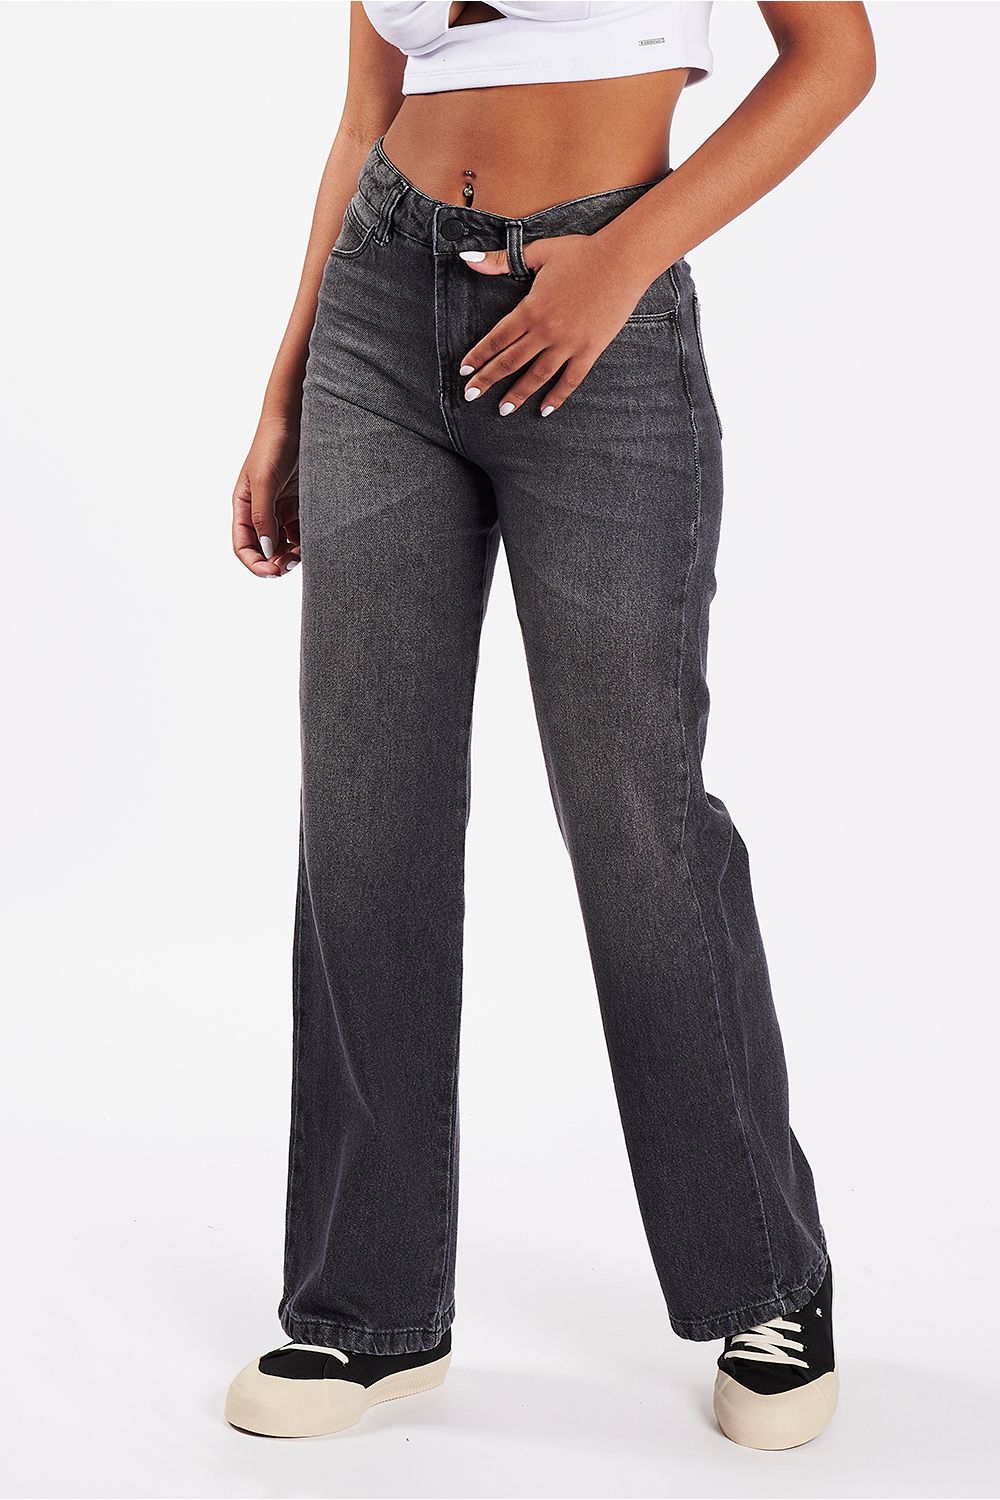 Calça jeans feminina nova de veludo grosso para esfregar jeans fashion  cintura alta pernas largas jeans plus veludo casual quente calças jeans,  Azul-marinho, PP